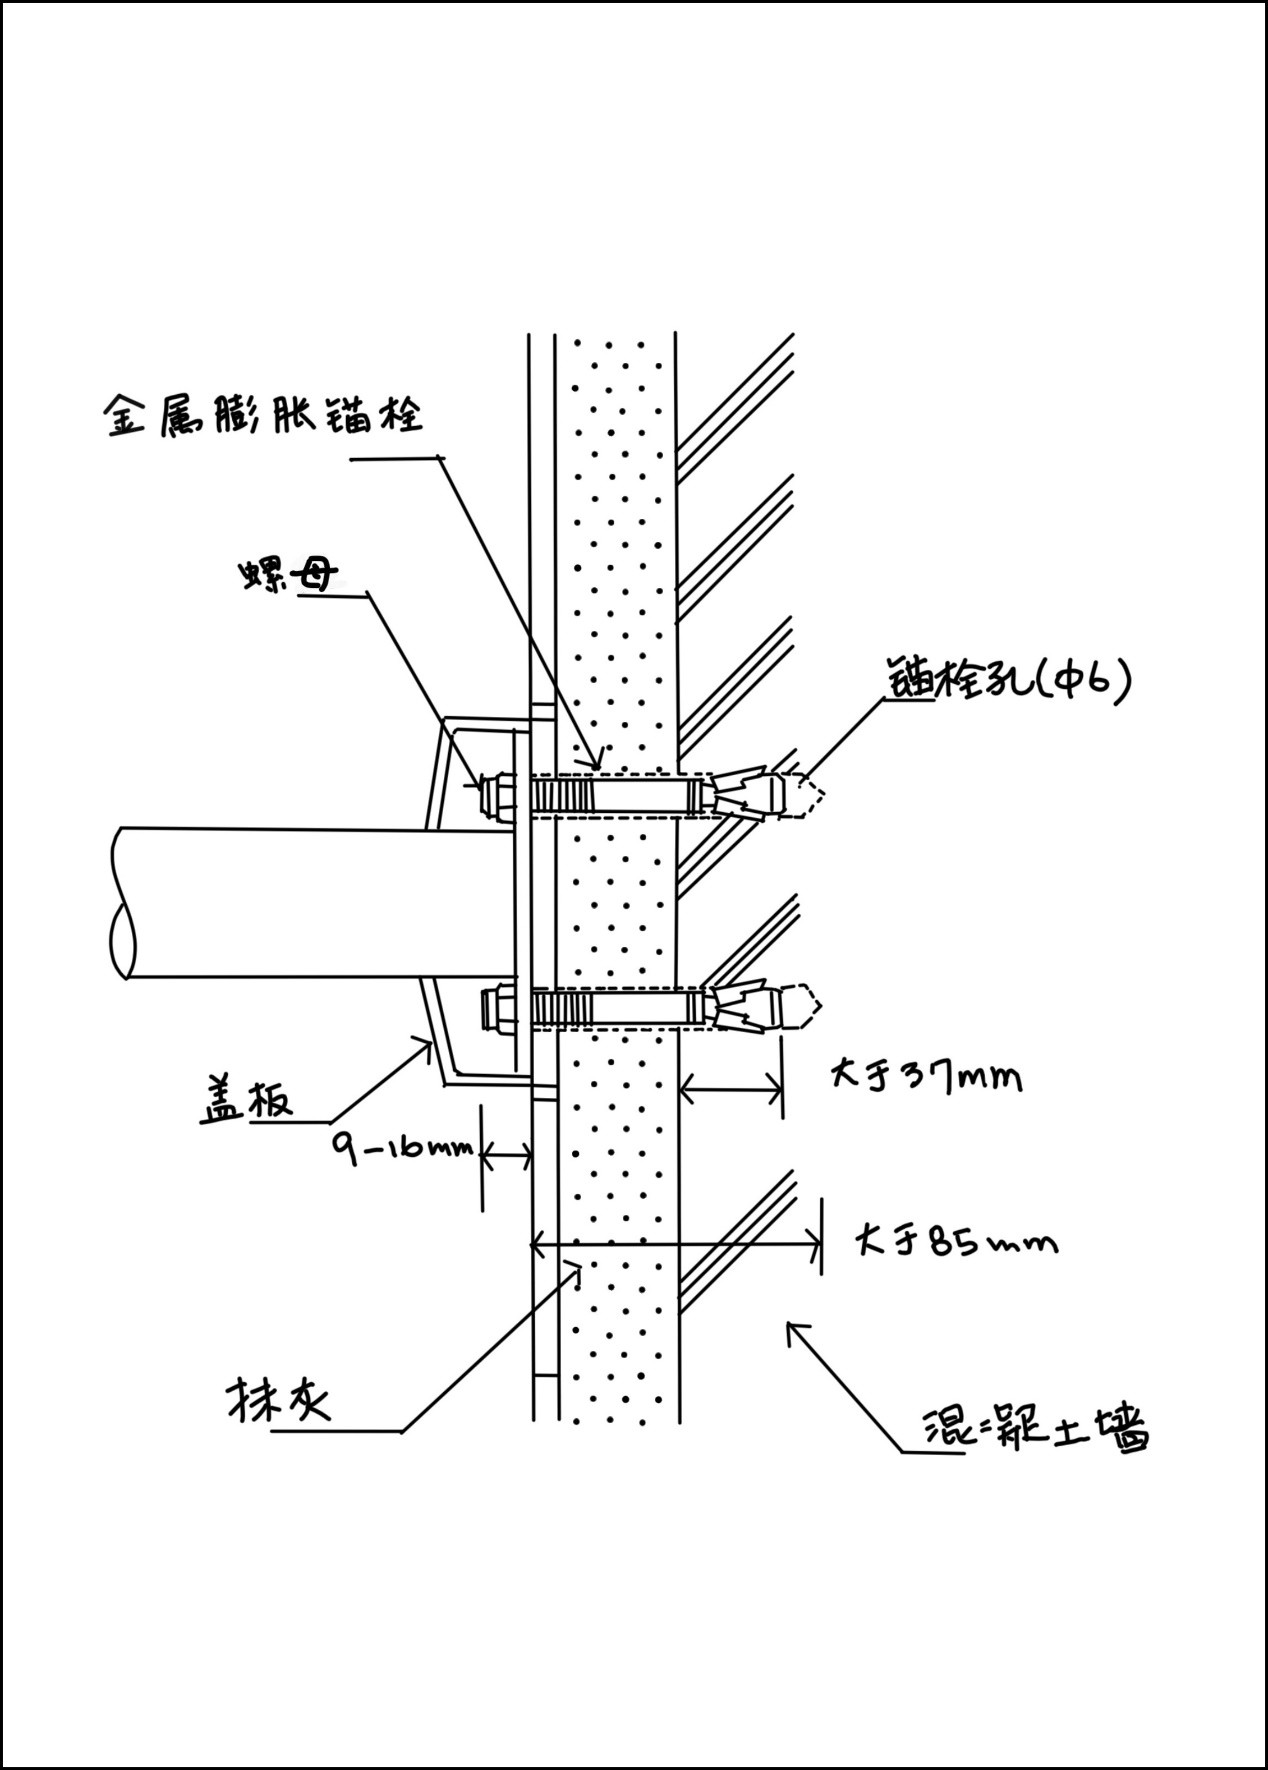 图 在空心砌块墙体结构上安装折翻扶手的施工方法.jpg